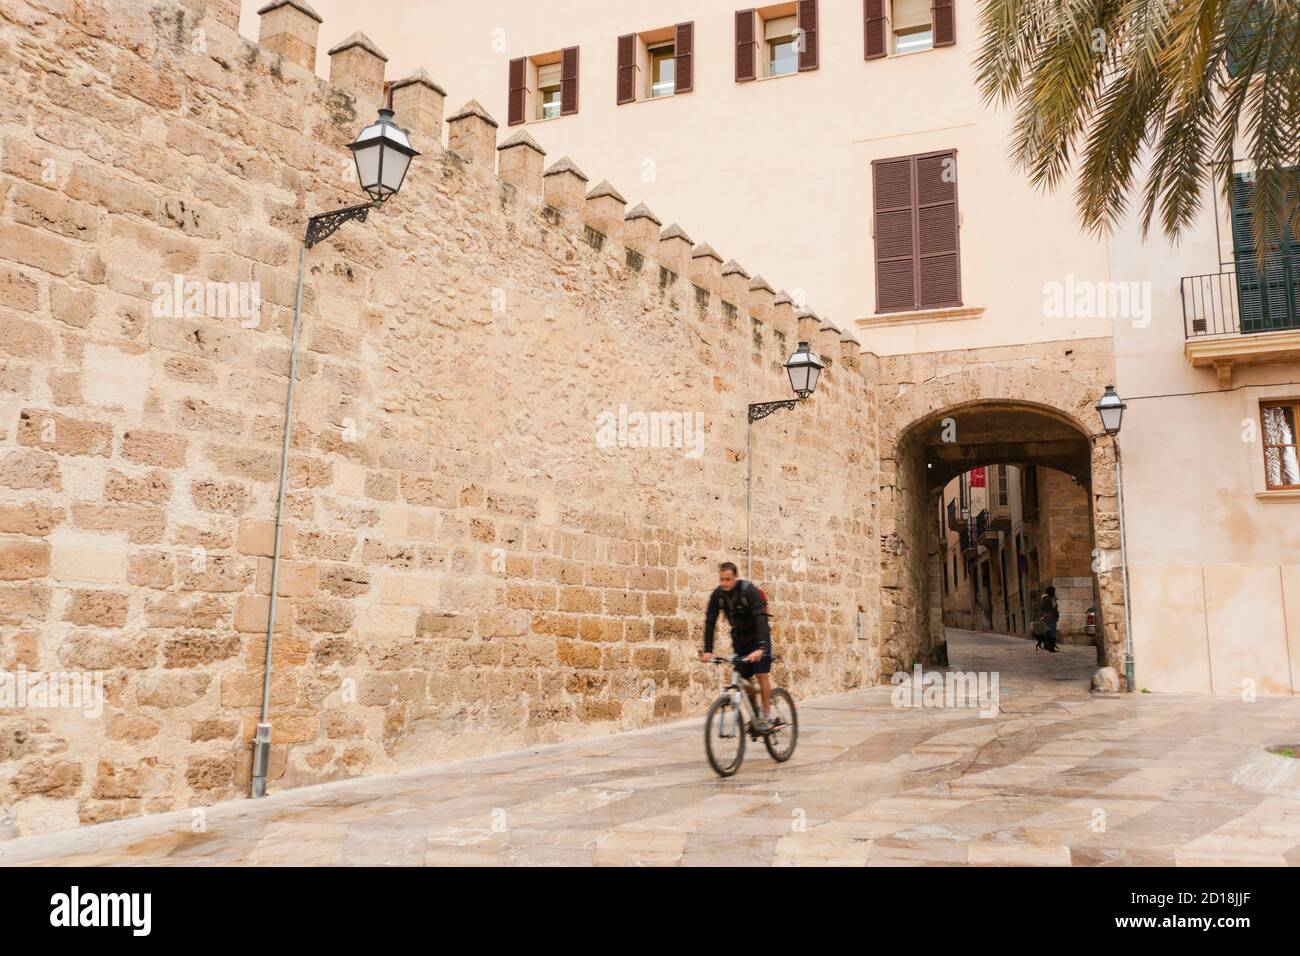 SA Portella, muralla medievale, Palma, mallorca, isole balneari, españa, europa Foto Stock